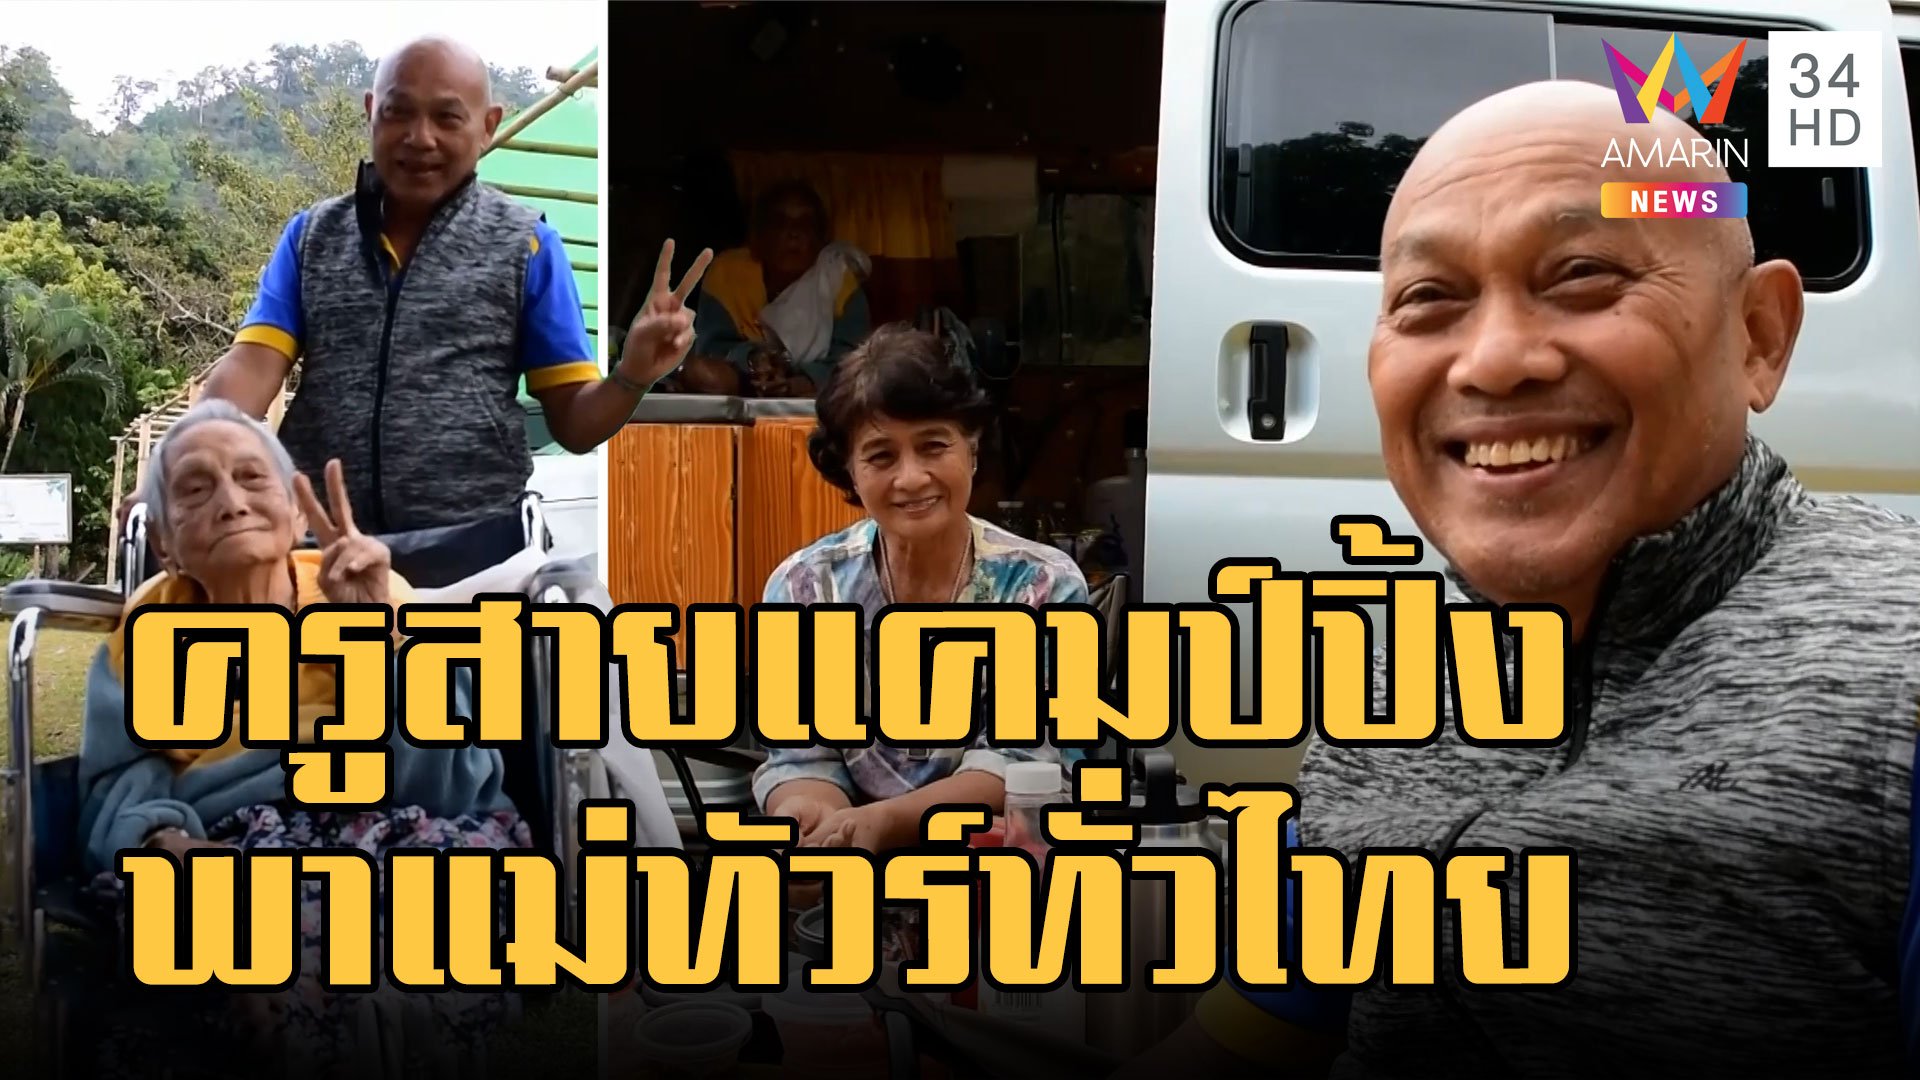 ครูเกษียณพาแม่วัย 99 ขับรถเที่ยวทั่วไทย | ข่าวเที่ยงอมรินทร์ | 19 ธ.ค. 65 | AMARIN TVHD34